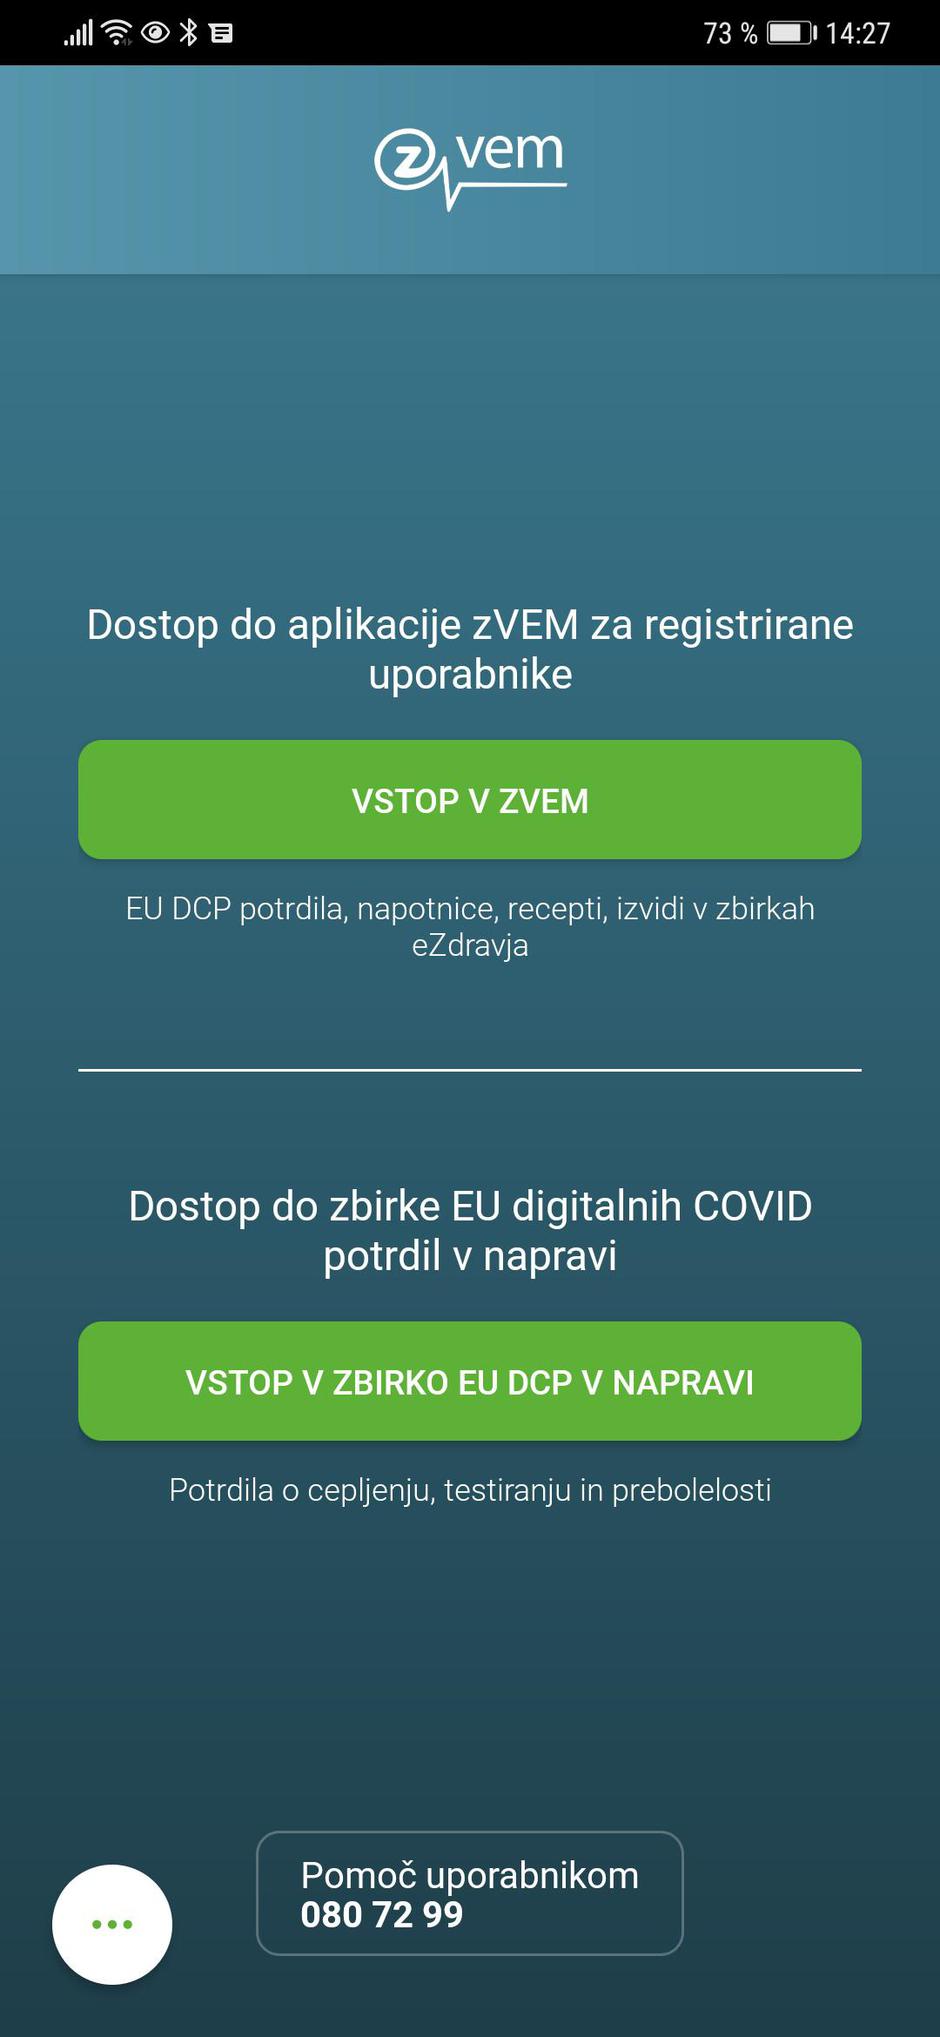 Mobilna aplikacija Zvem | Avtor: zurnal24.si